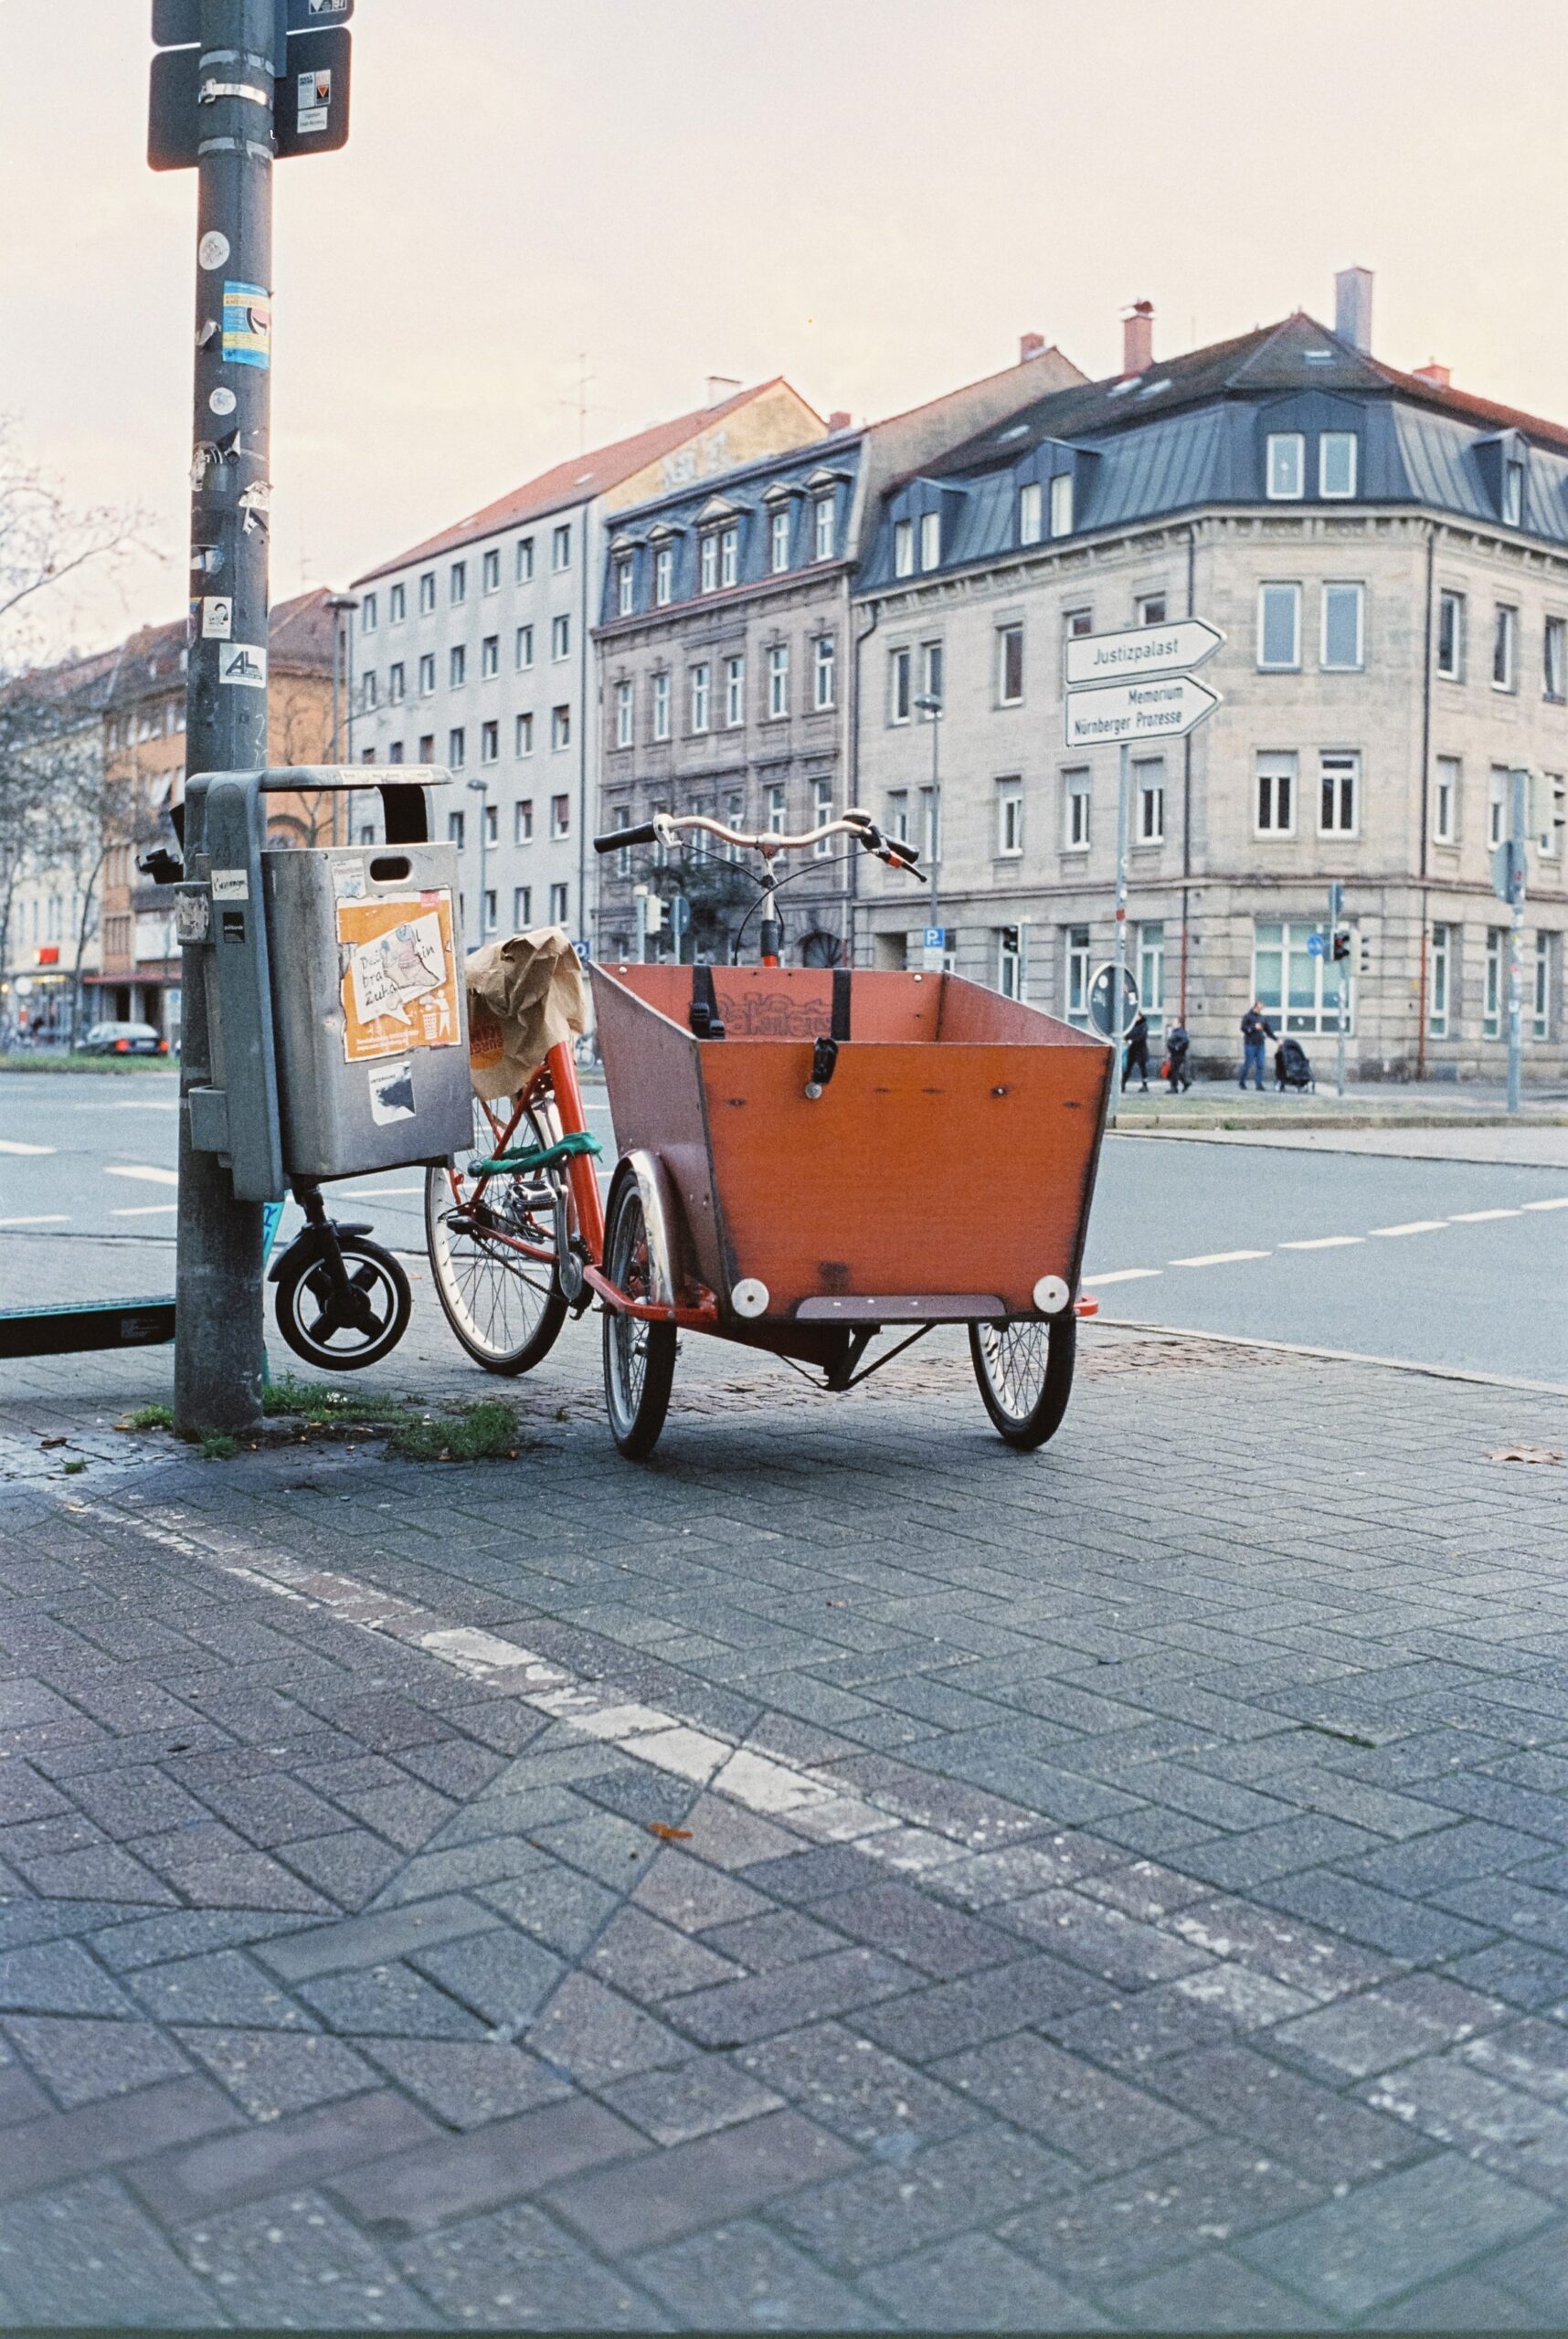 Lastenrad parkt neben Mülleimer auf Fußweg.